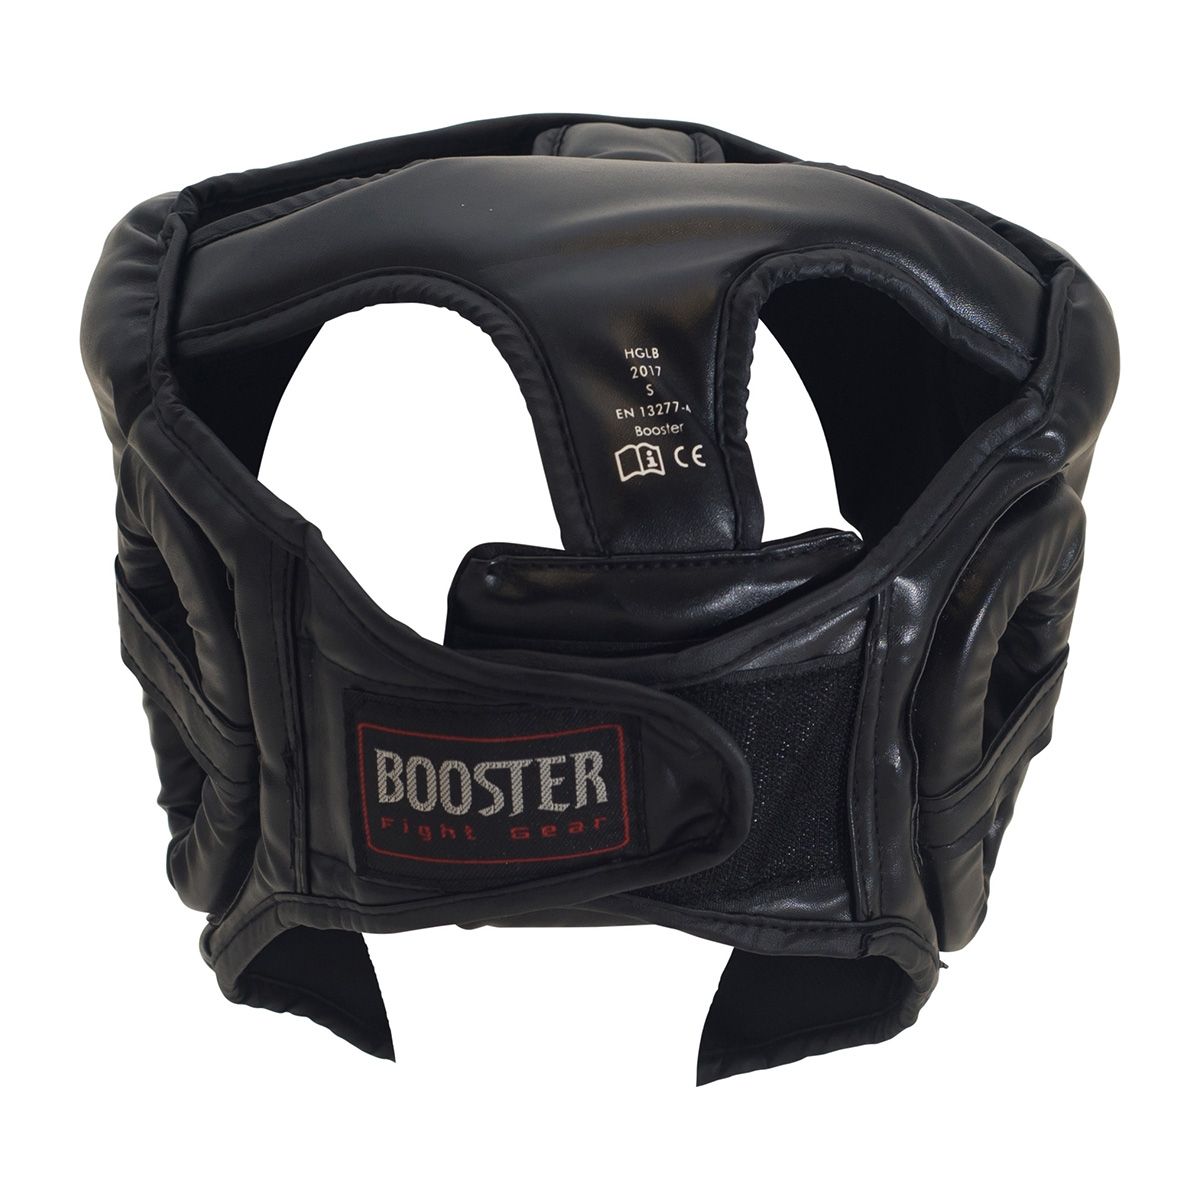 Booster Fightgear - hoofdbeschemer - HGL B 2 - zwart